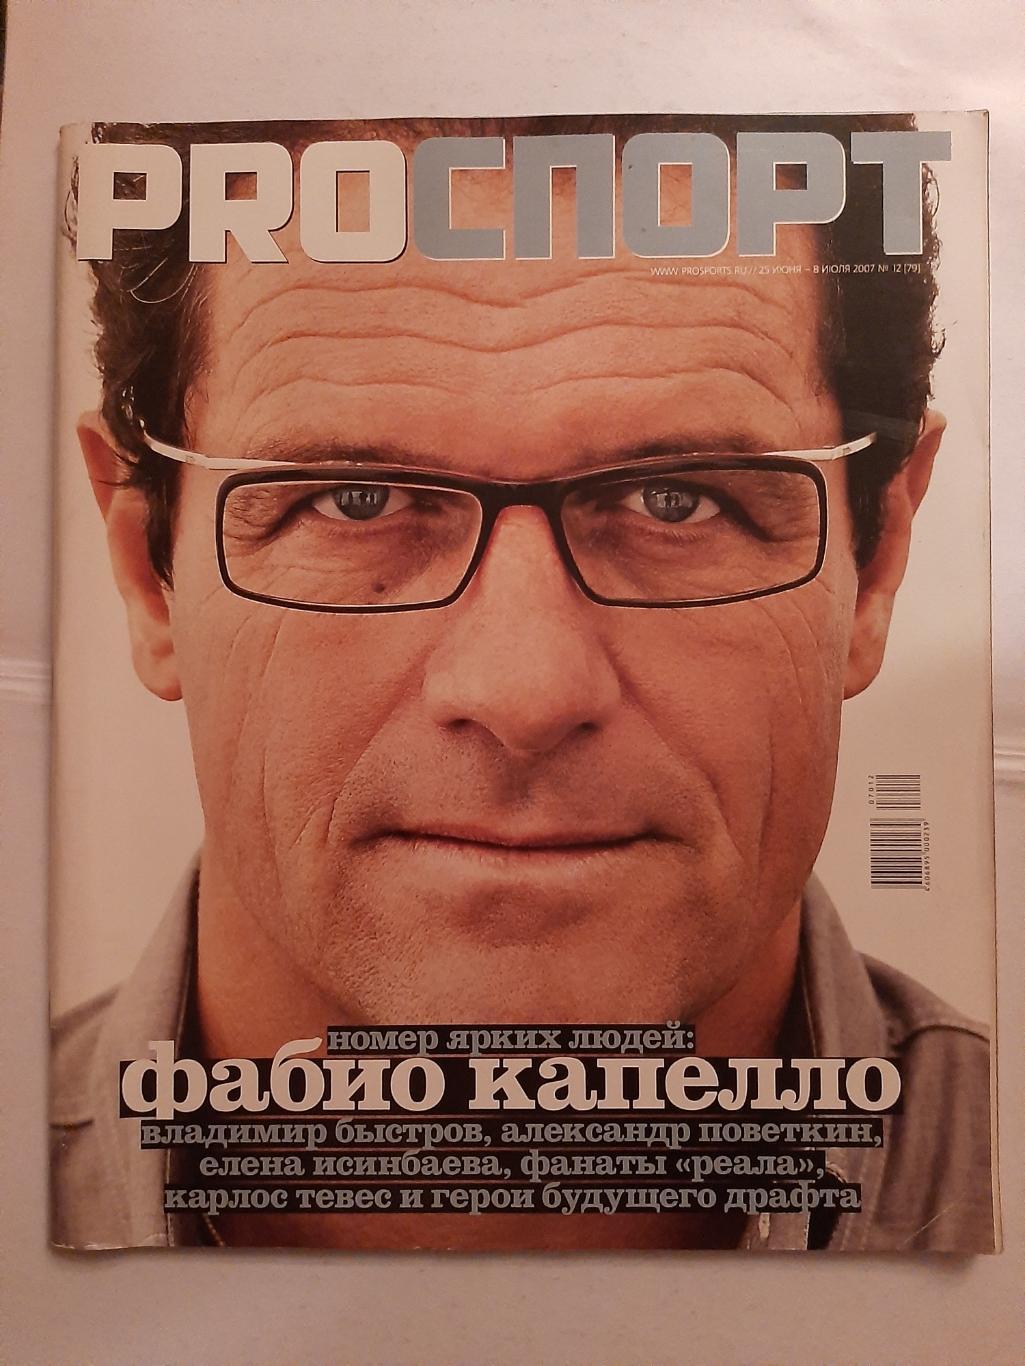 Журнал ProСпорт №12 2007